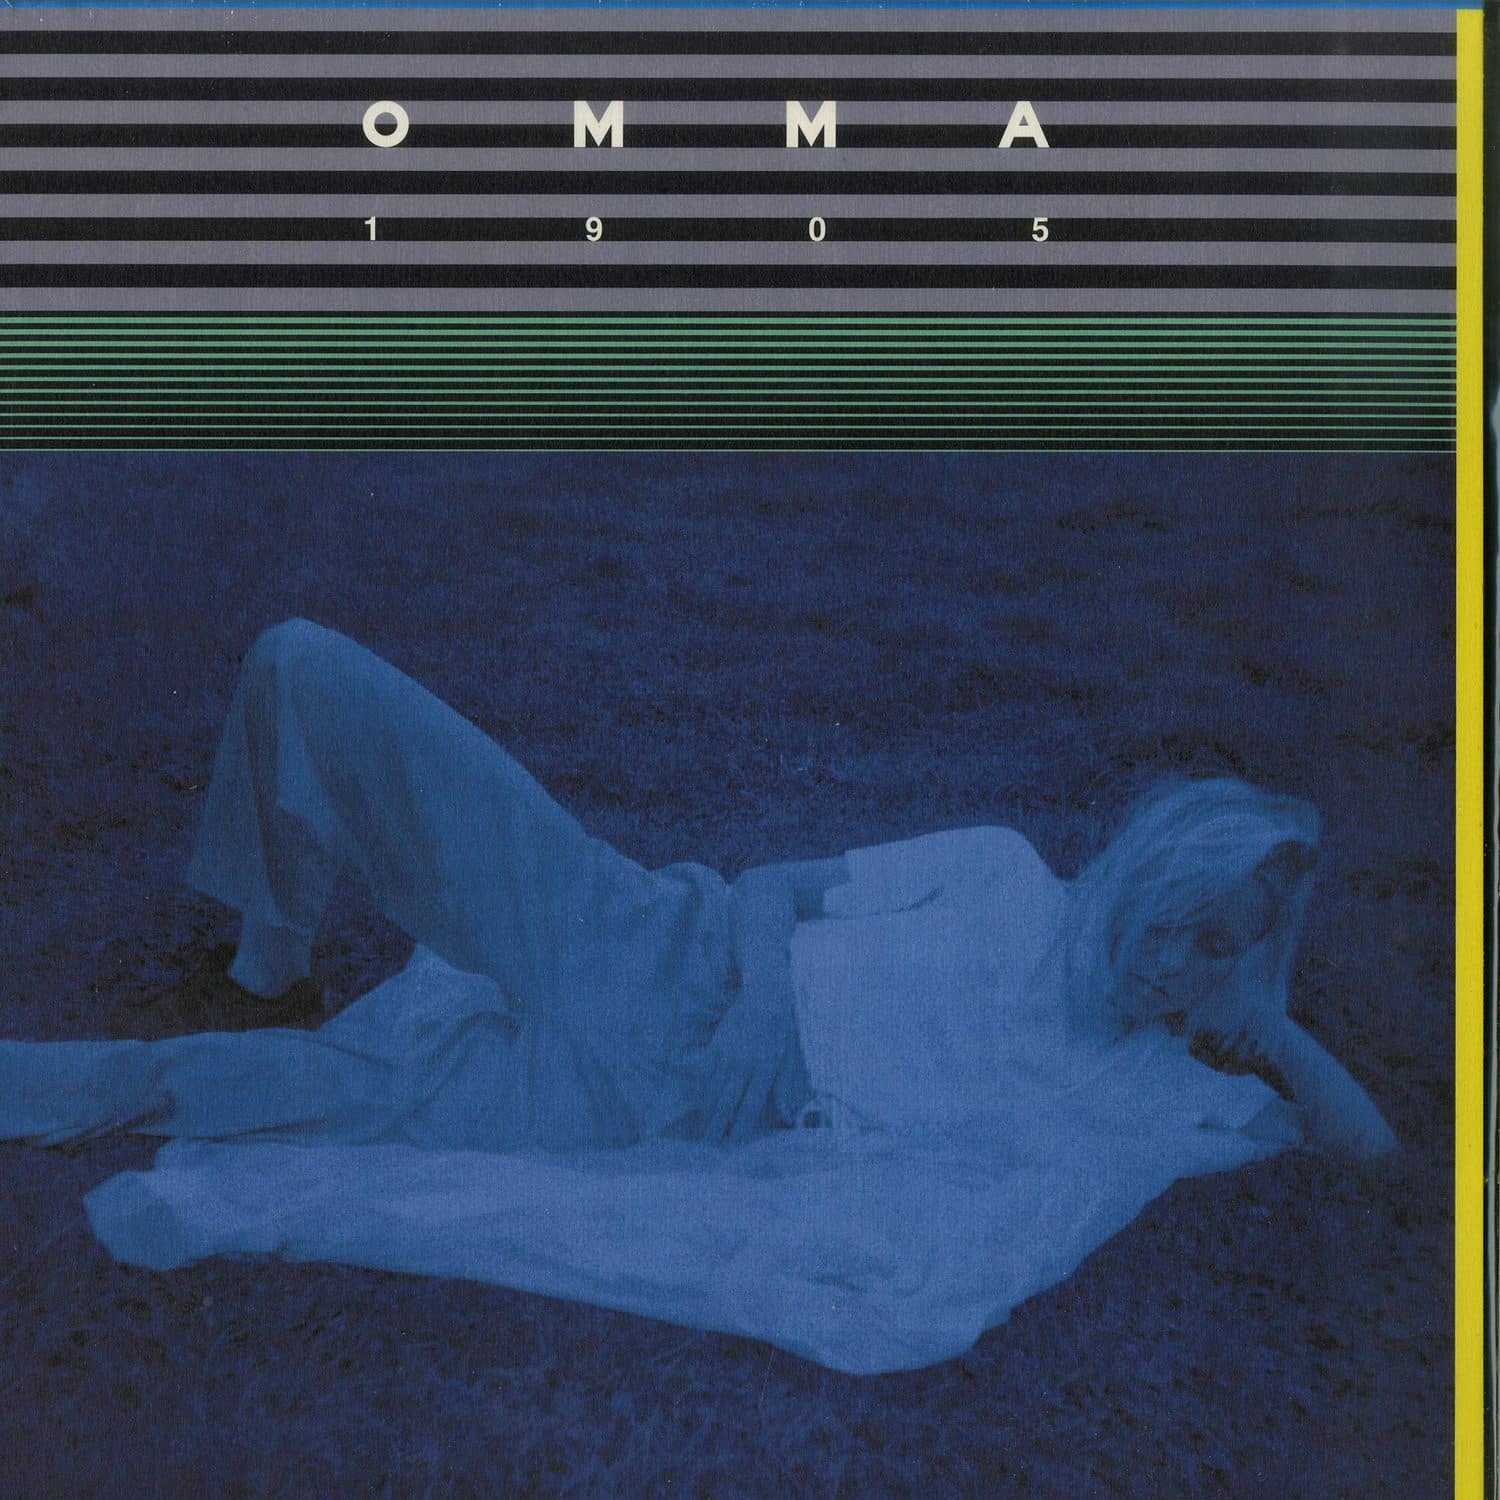 OMMA - 1905 